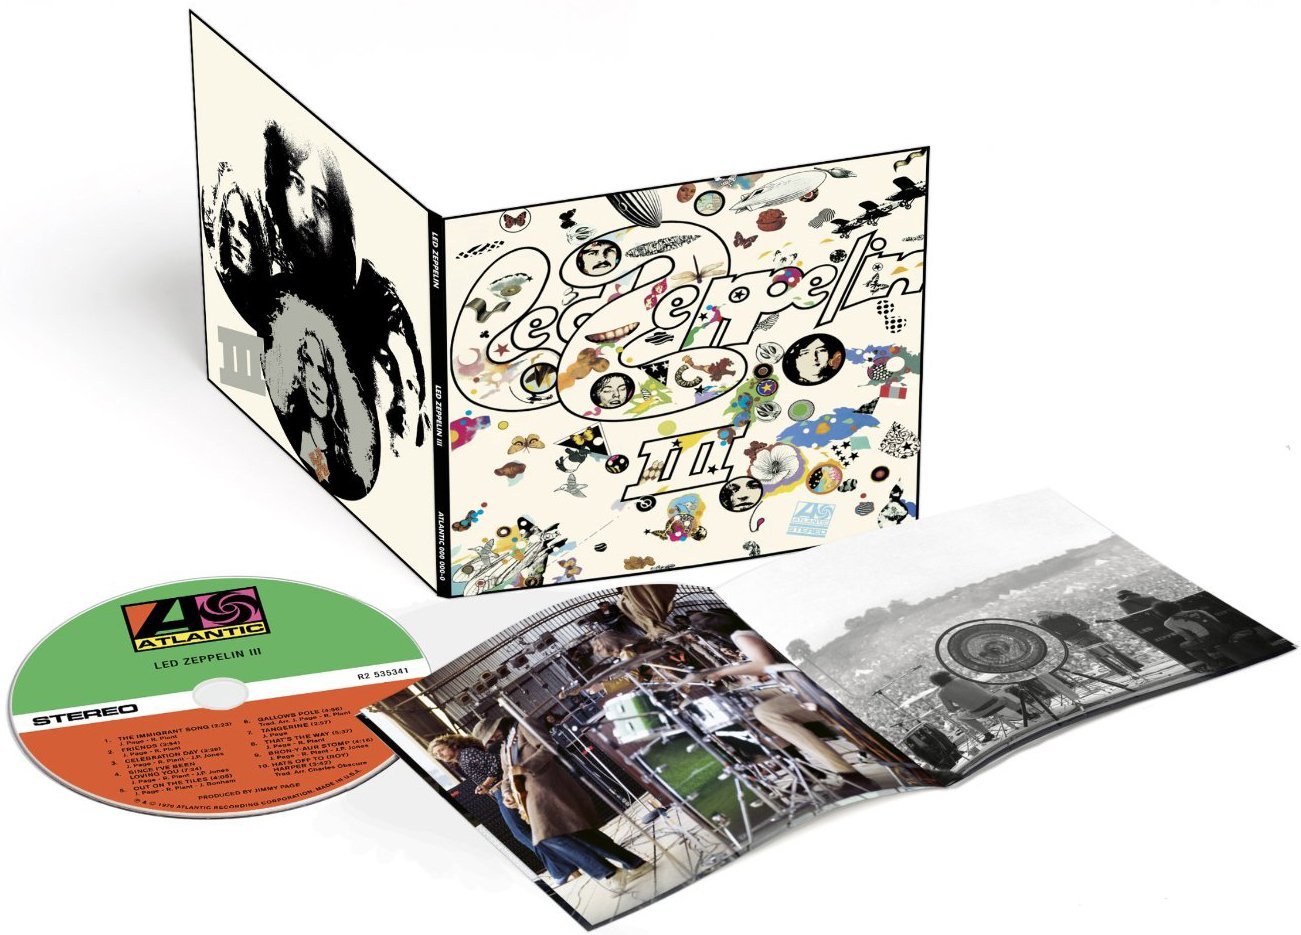 Led Zeppelin's Cd collection. The Led III is on vinyl :) : r/ledzeppelin